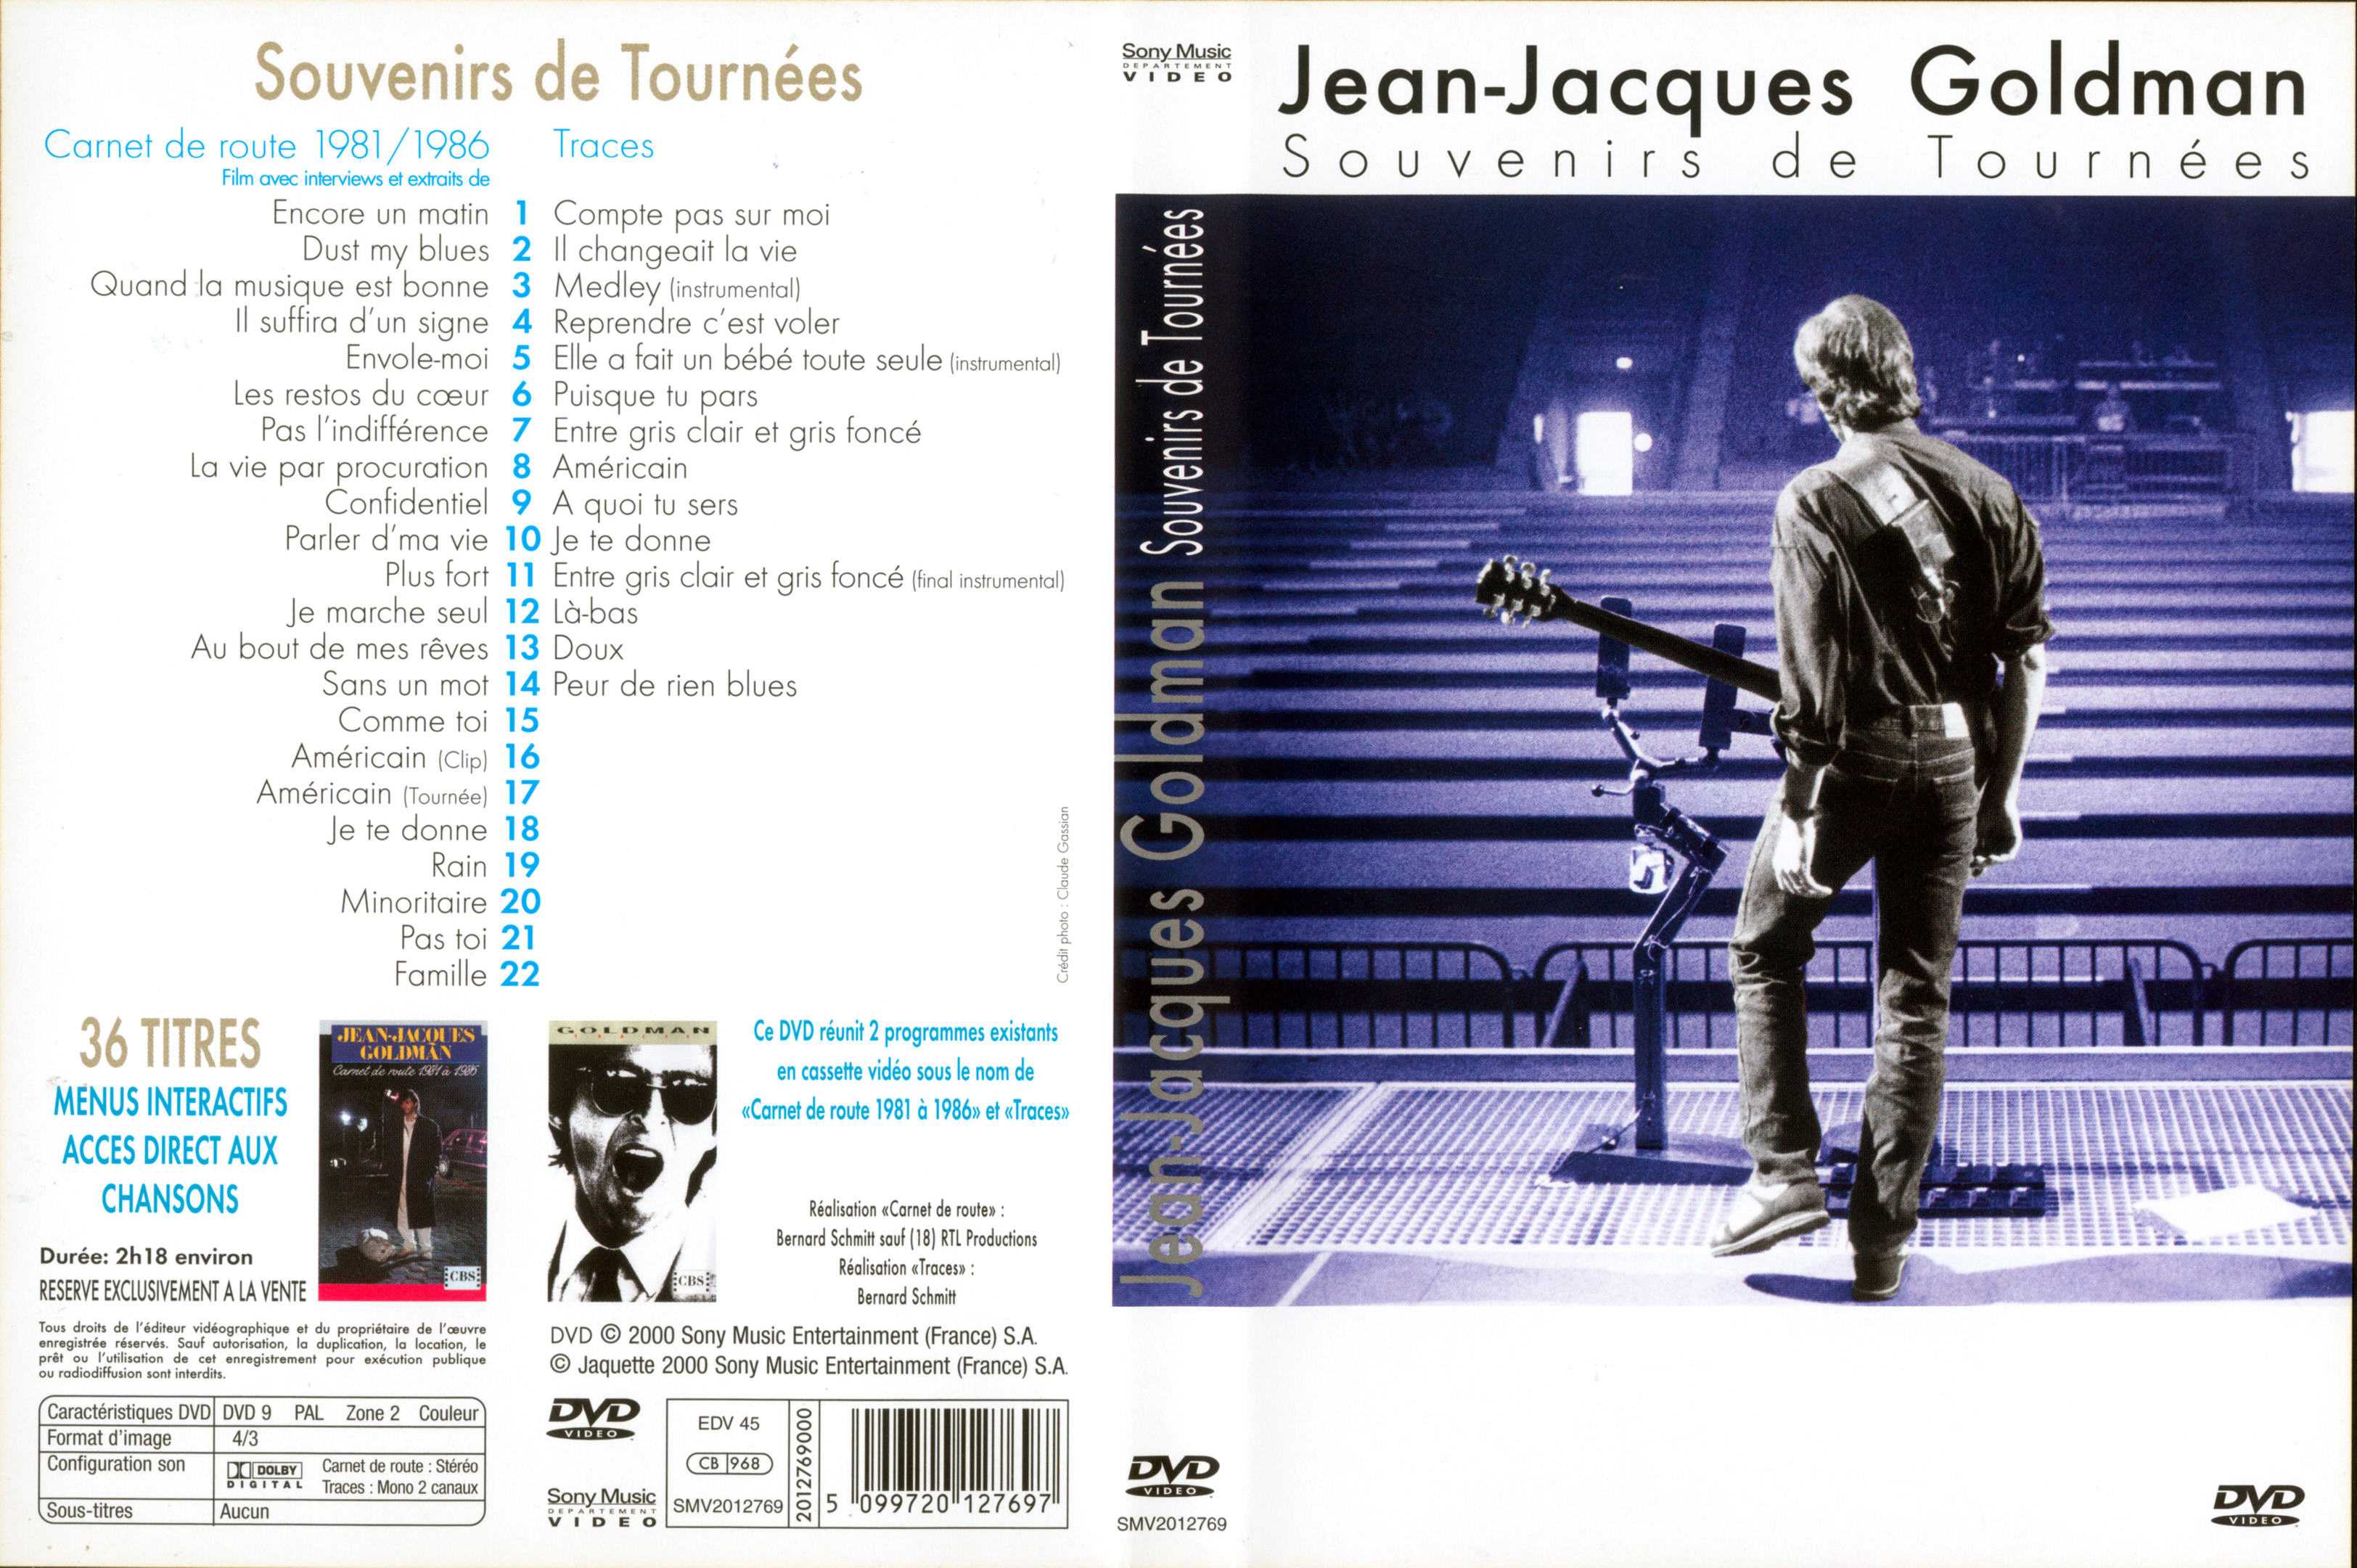 Jaquette DVD Jean-Jacques Goldman - Souvenirs de tournes